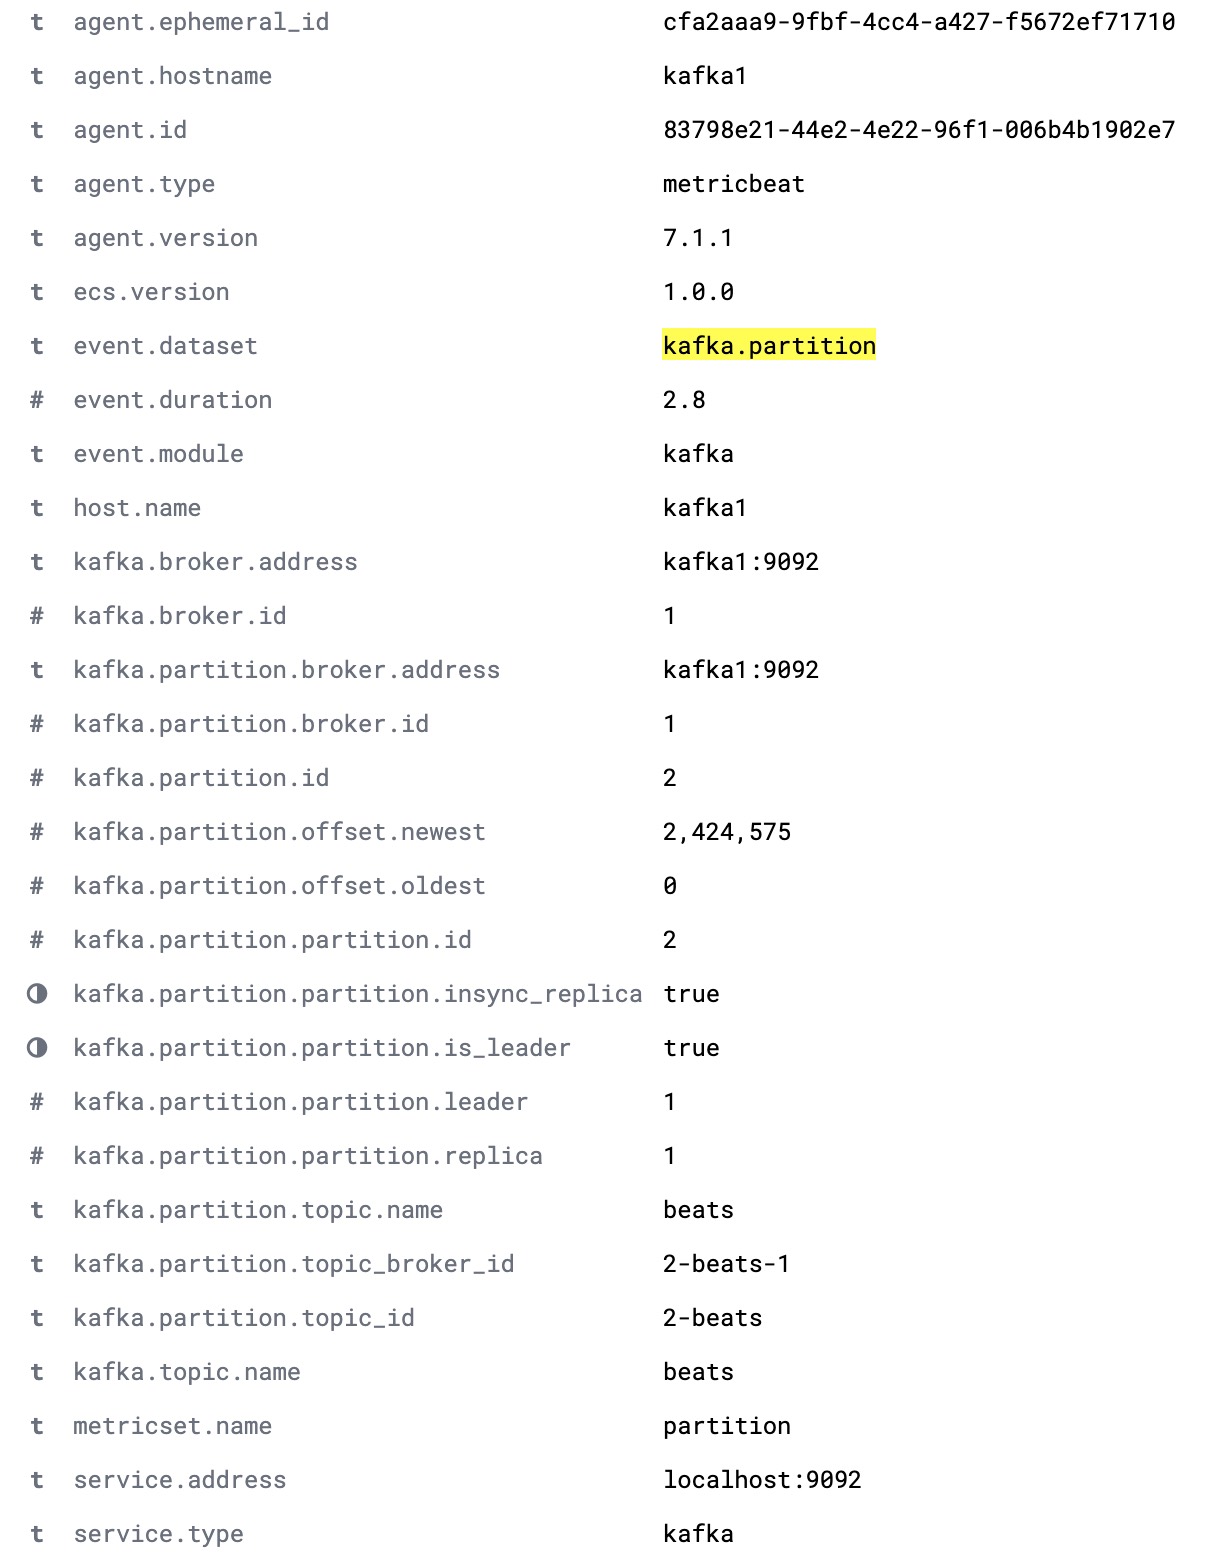 完整的 kafka.partition 文档，列出了一个集群内分区的完整详情